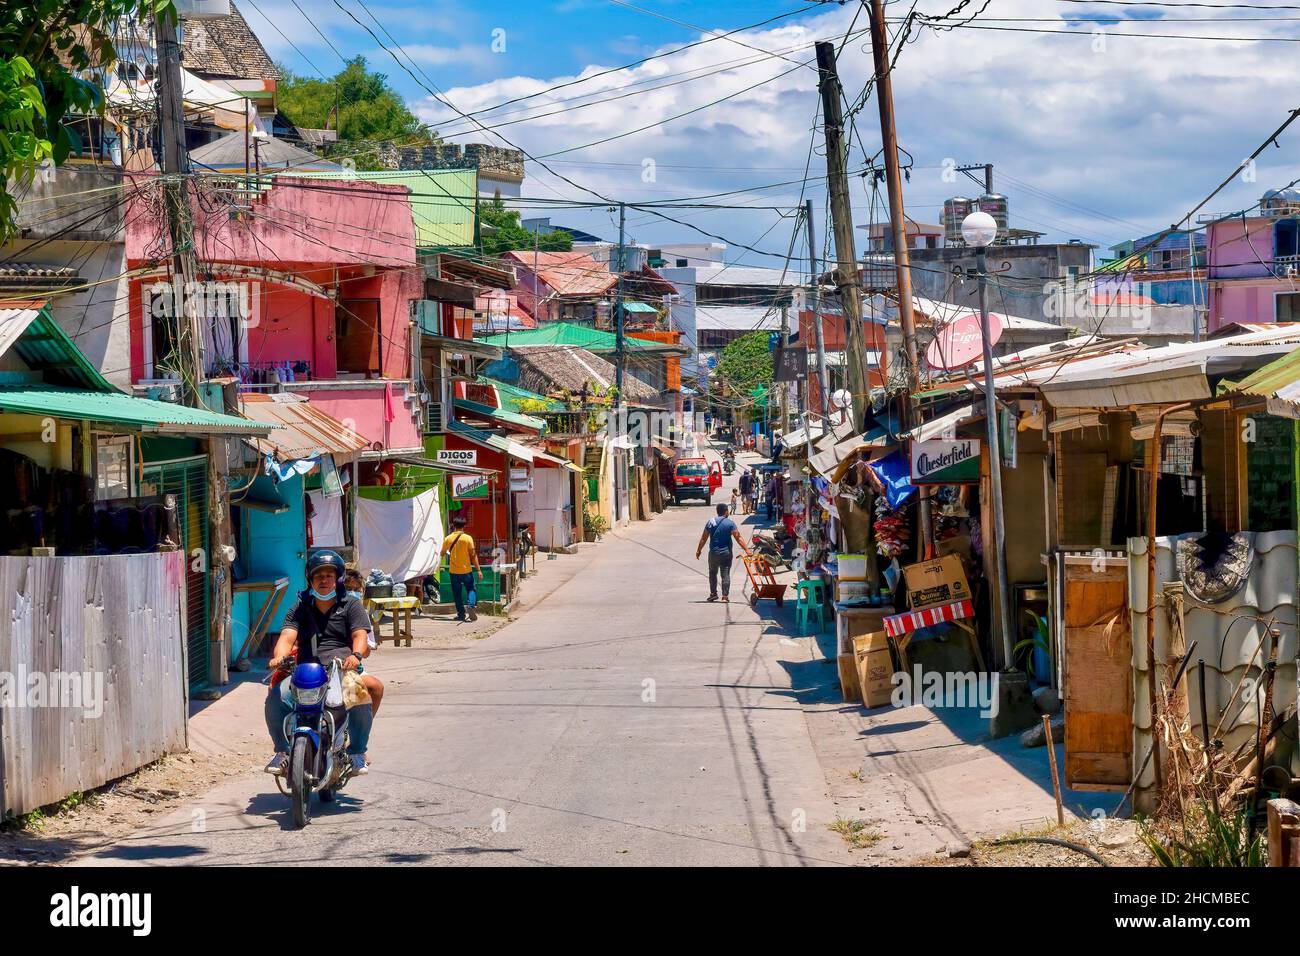 Village de Sabang, Puerto Galera, Philippines - 4 mai 2021 : vue sur la rue marchande non surpeuplée d'une petite station balnéaire située sur l'île Mindoro. Banque D'Images